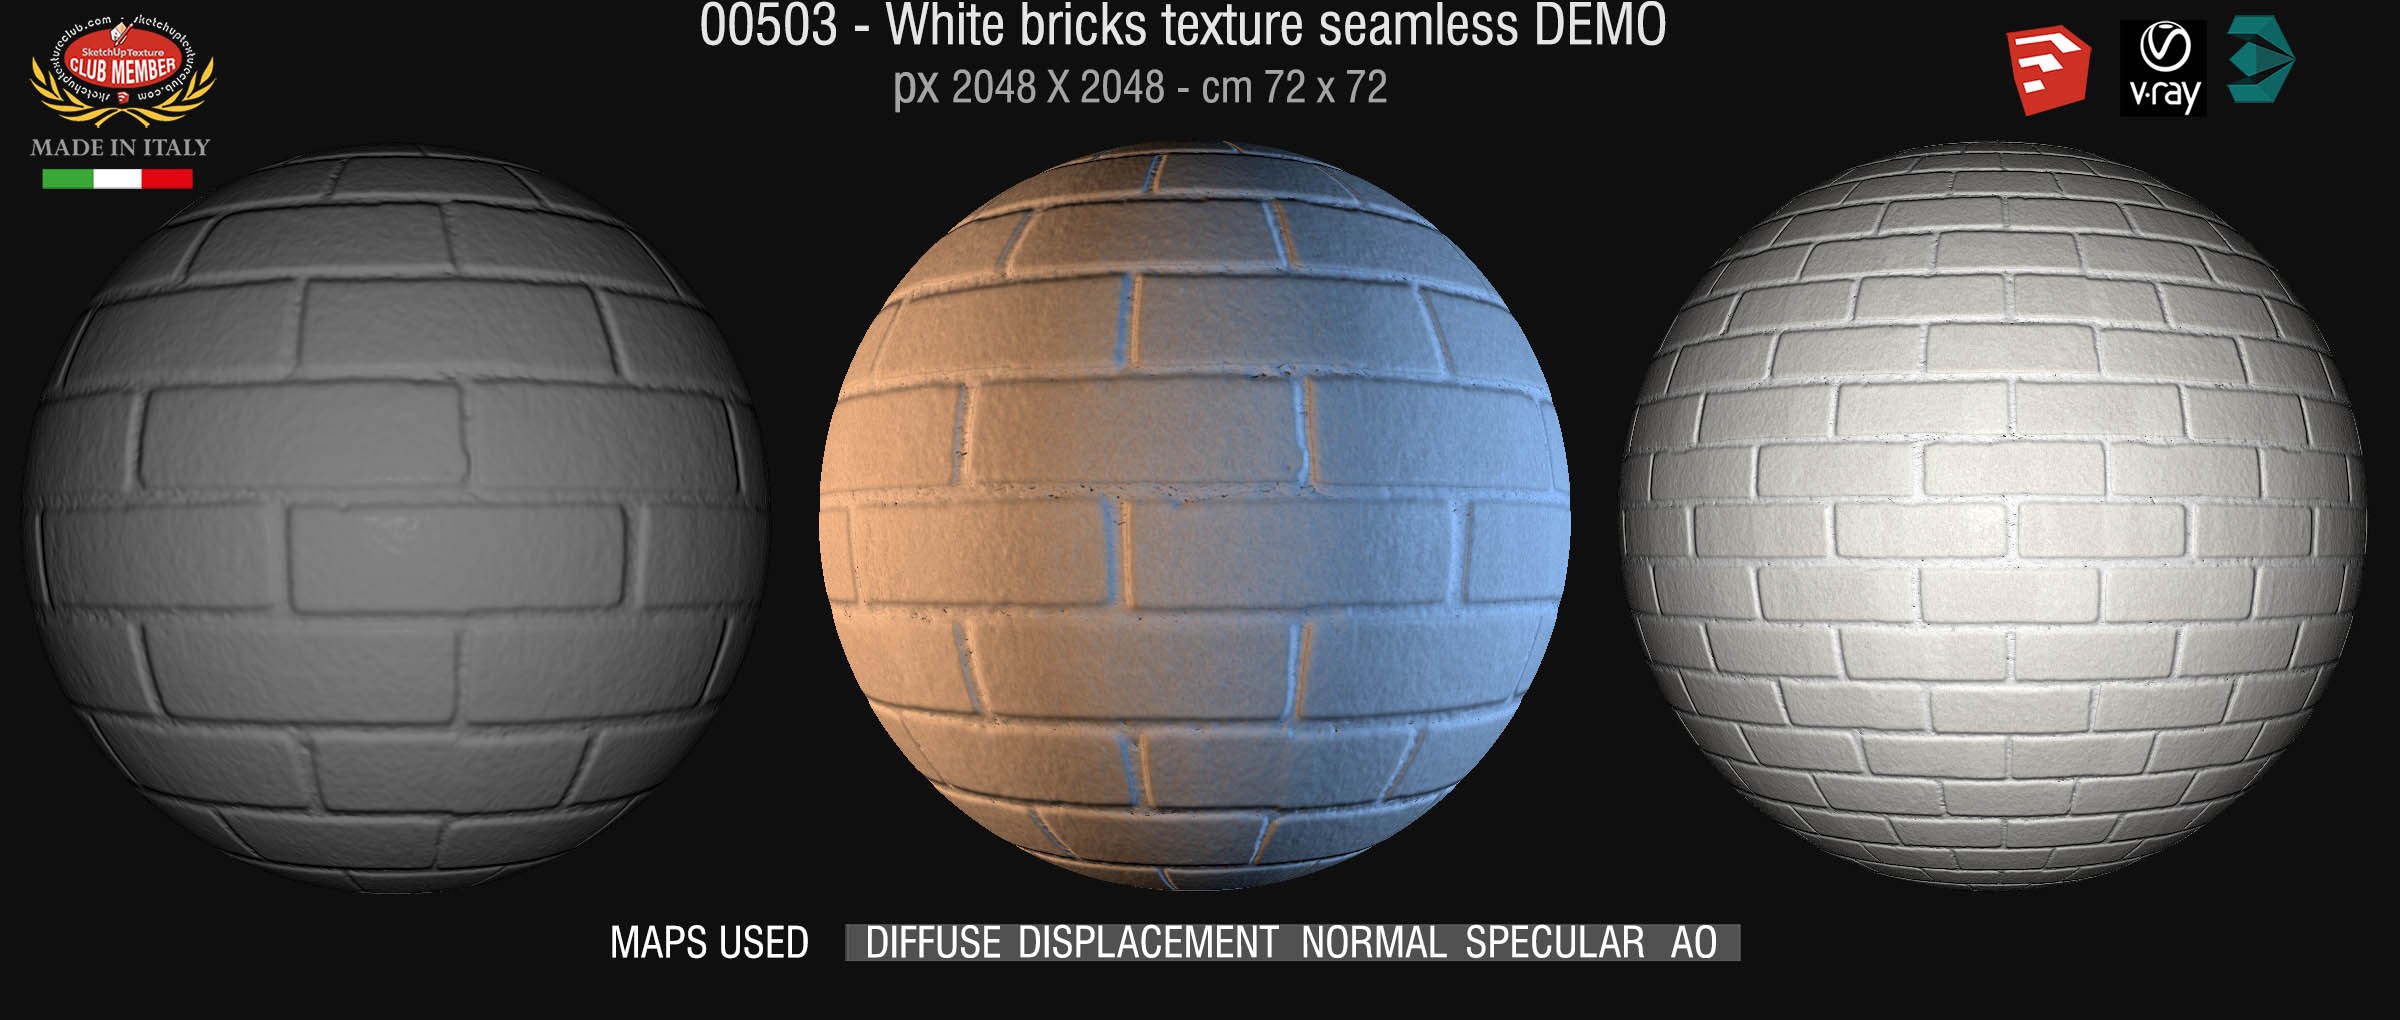 00503 White bricks texture seamless + maps DEMO